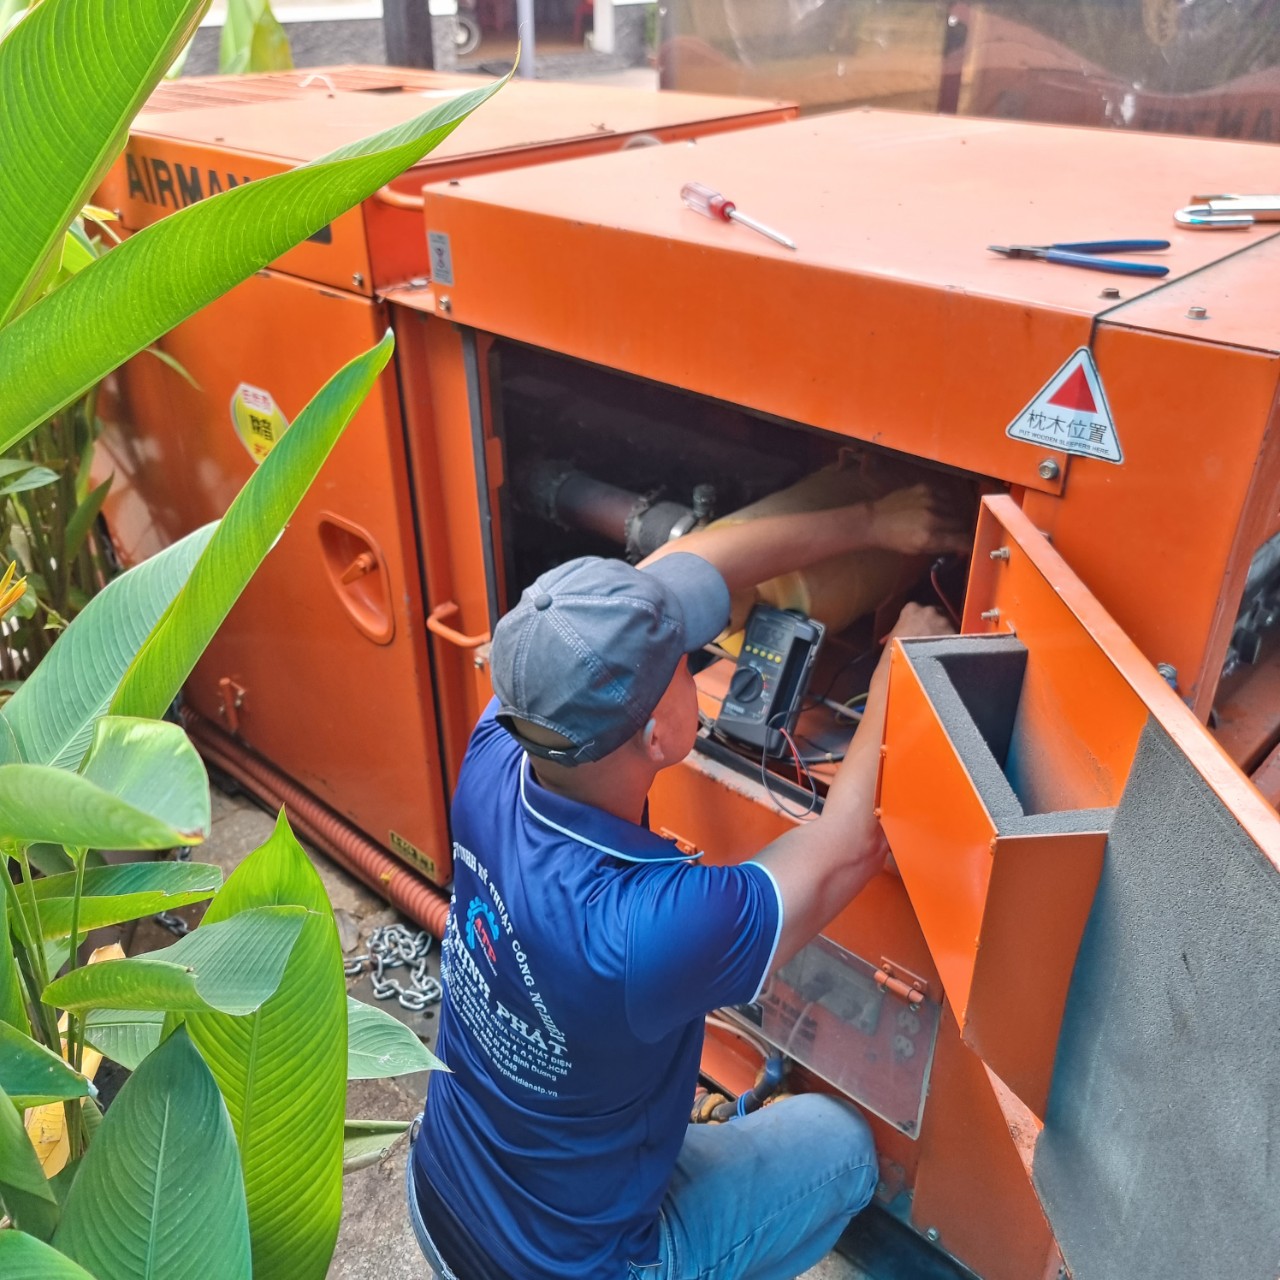 HÌnh ảnh thực tế sửa chữa - bảo dưỡng máy phát điện tại An Thịnh Phát